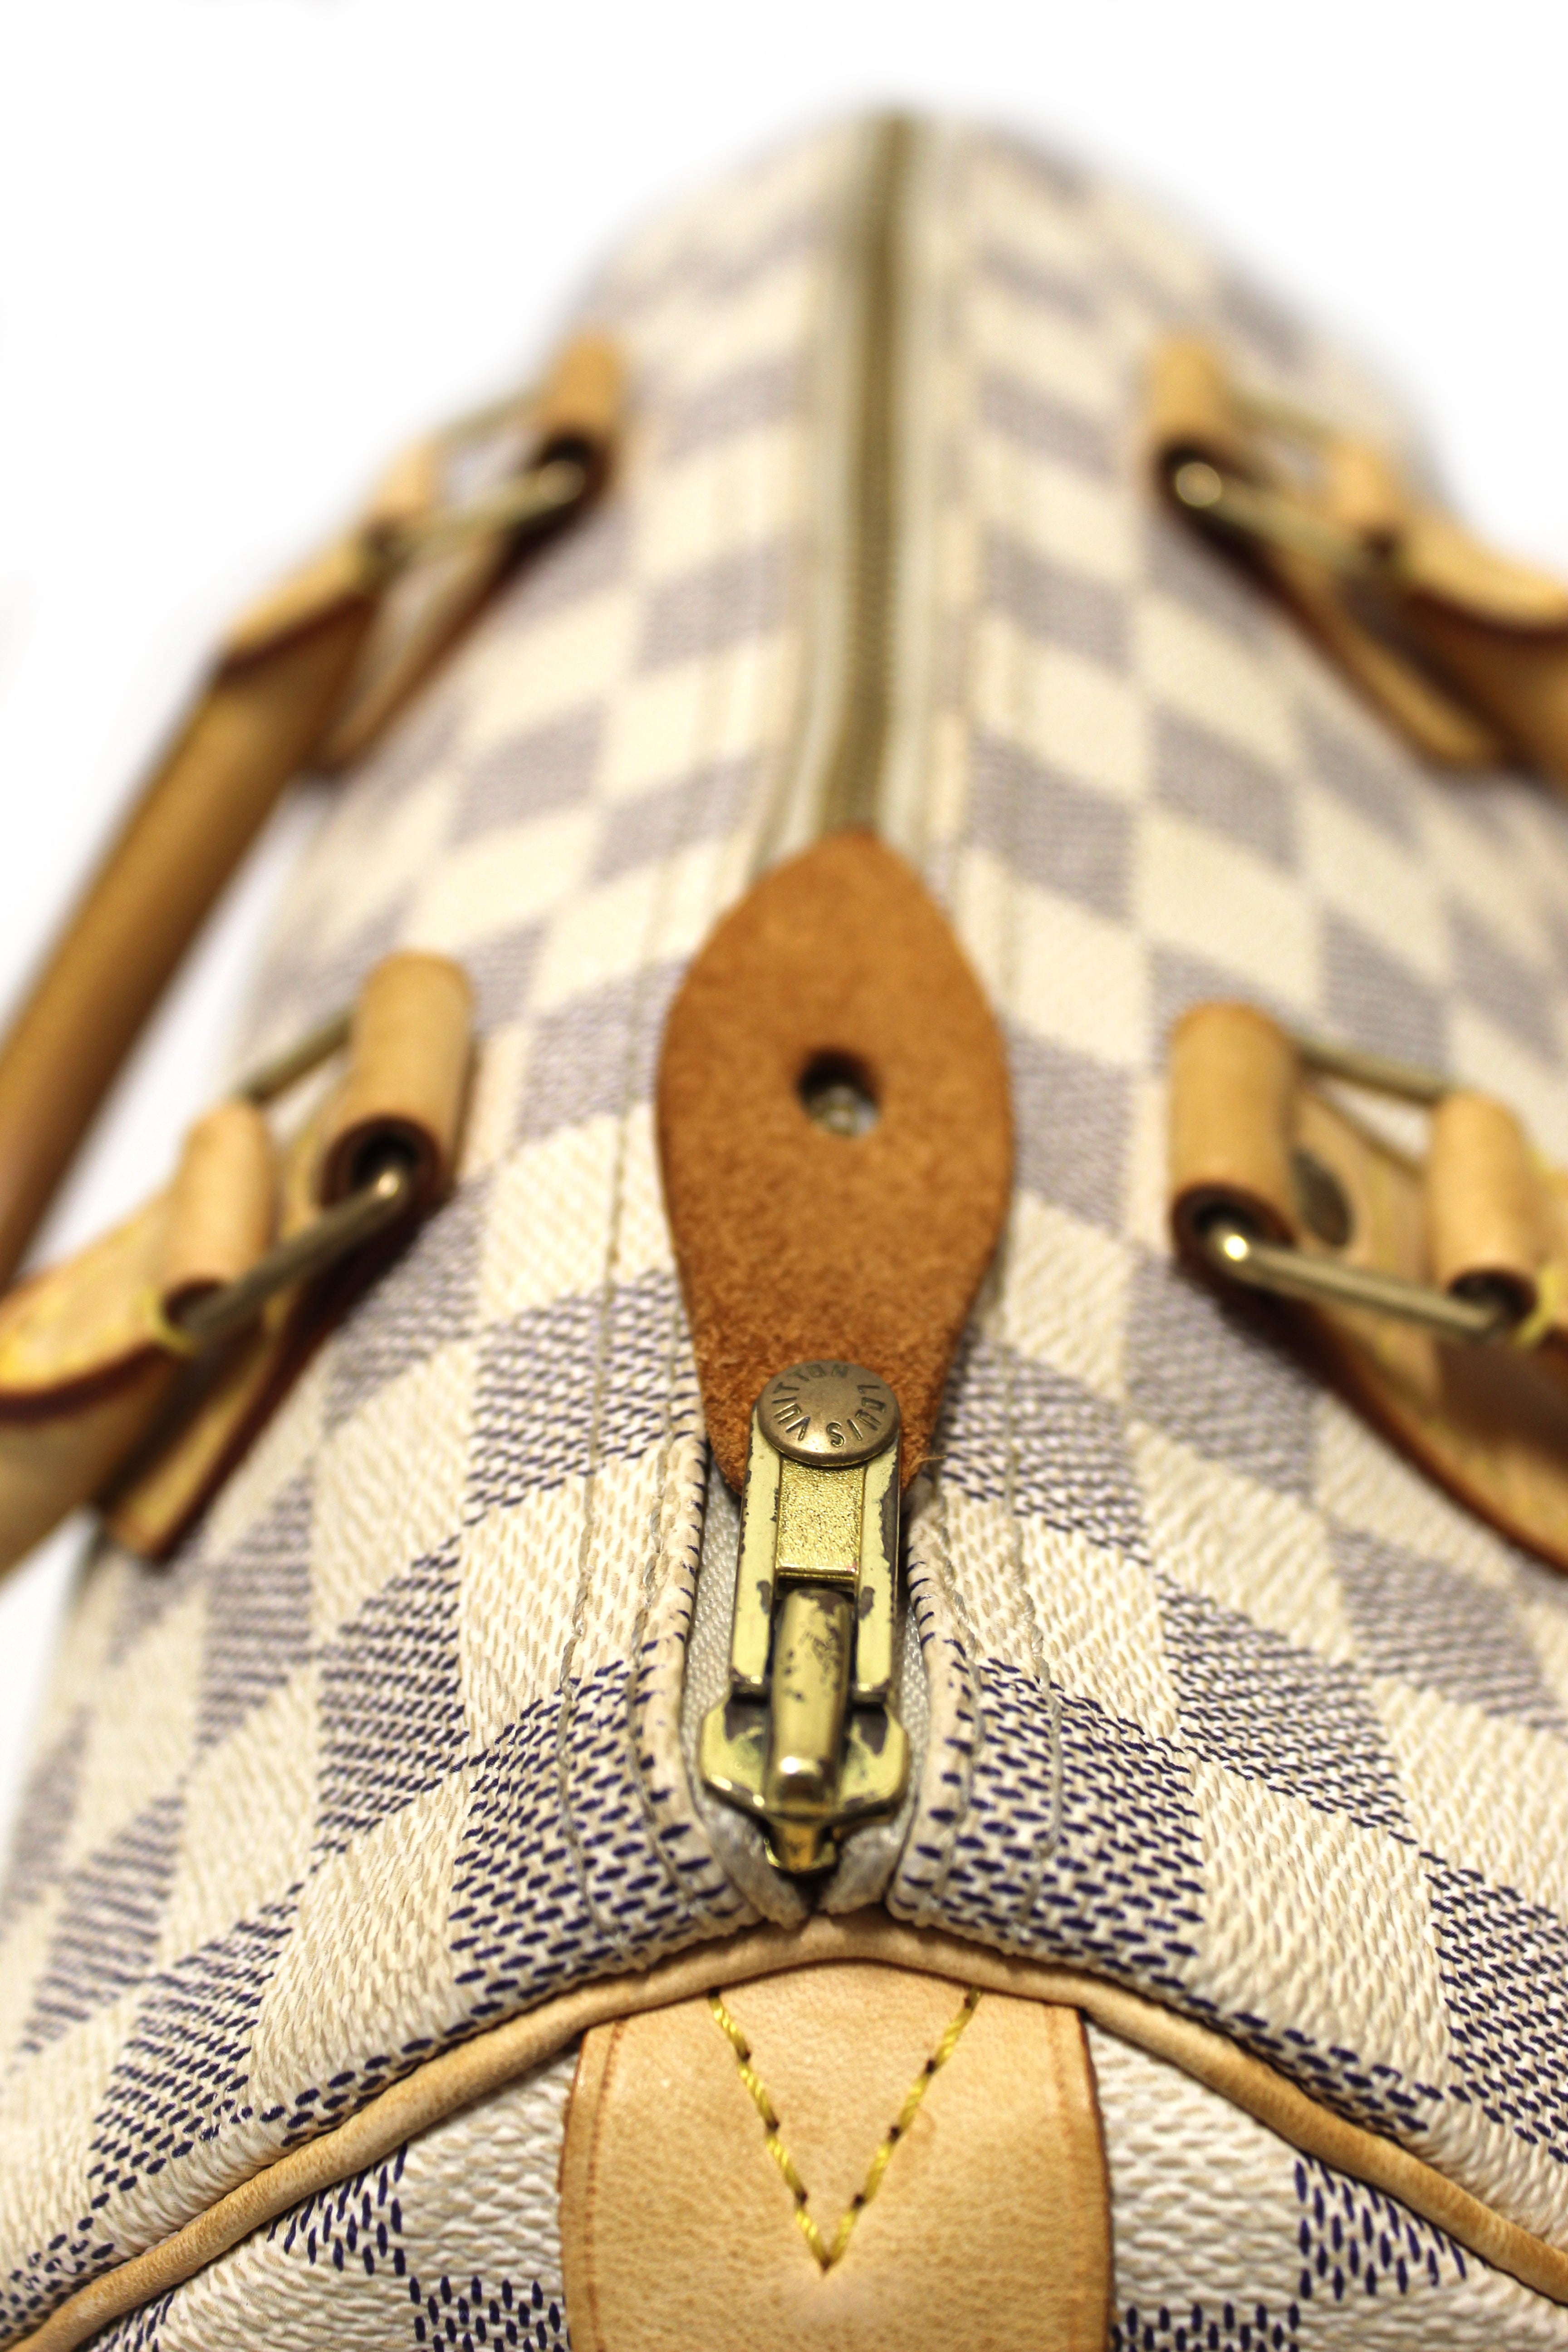 Authentic Louis Vuitton Damier Azur Canvas Speedy 25 Handbag – Paris  Station Shop